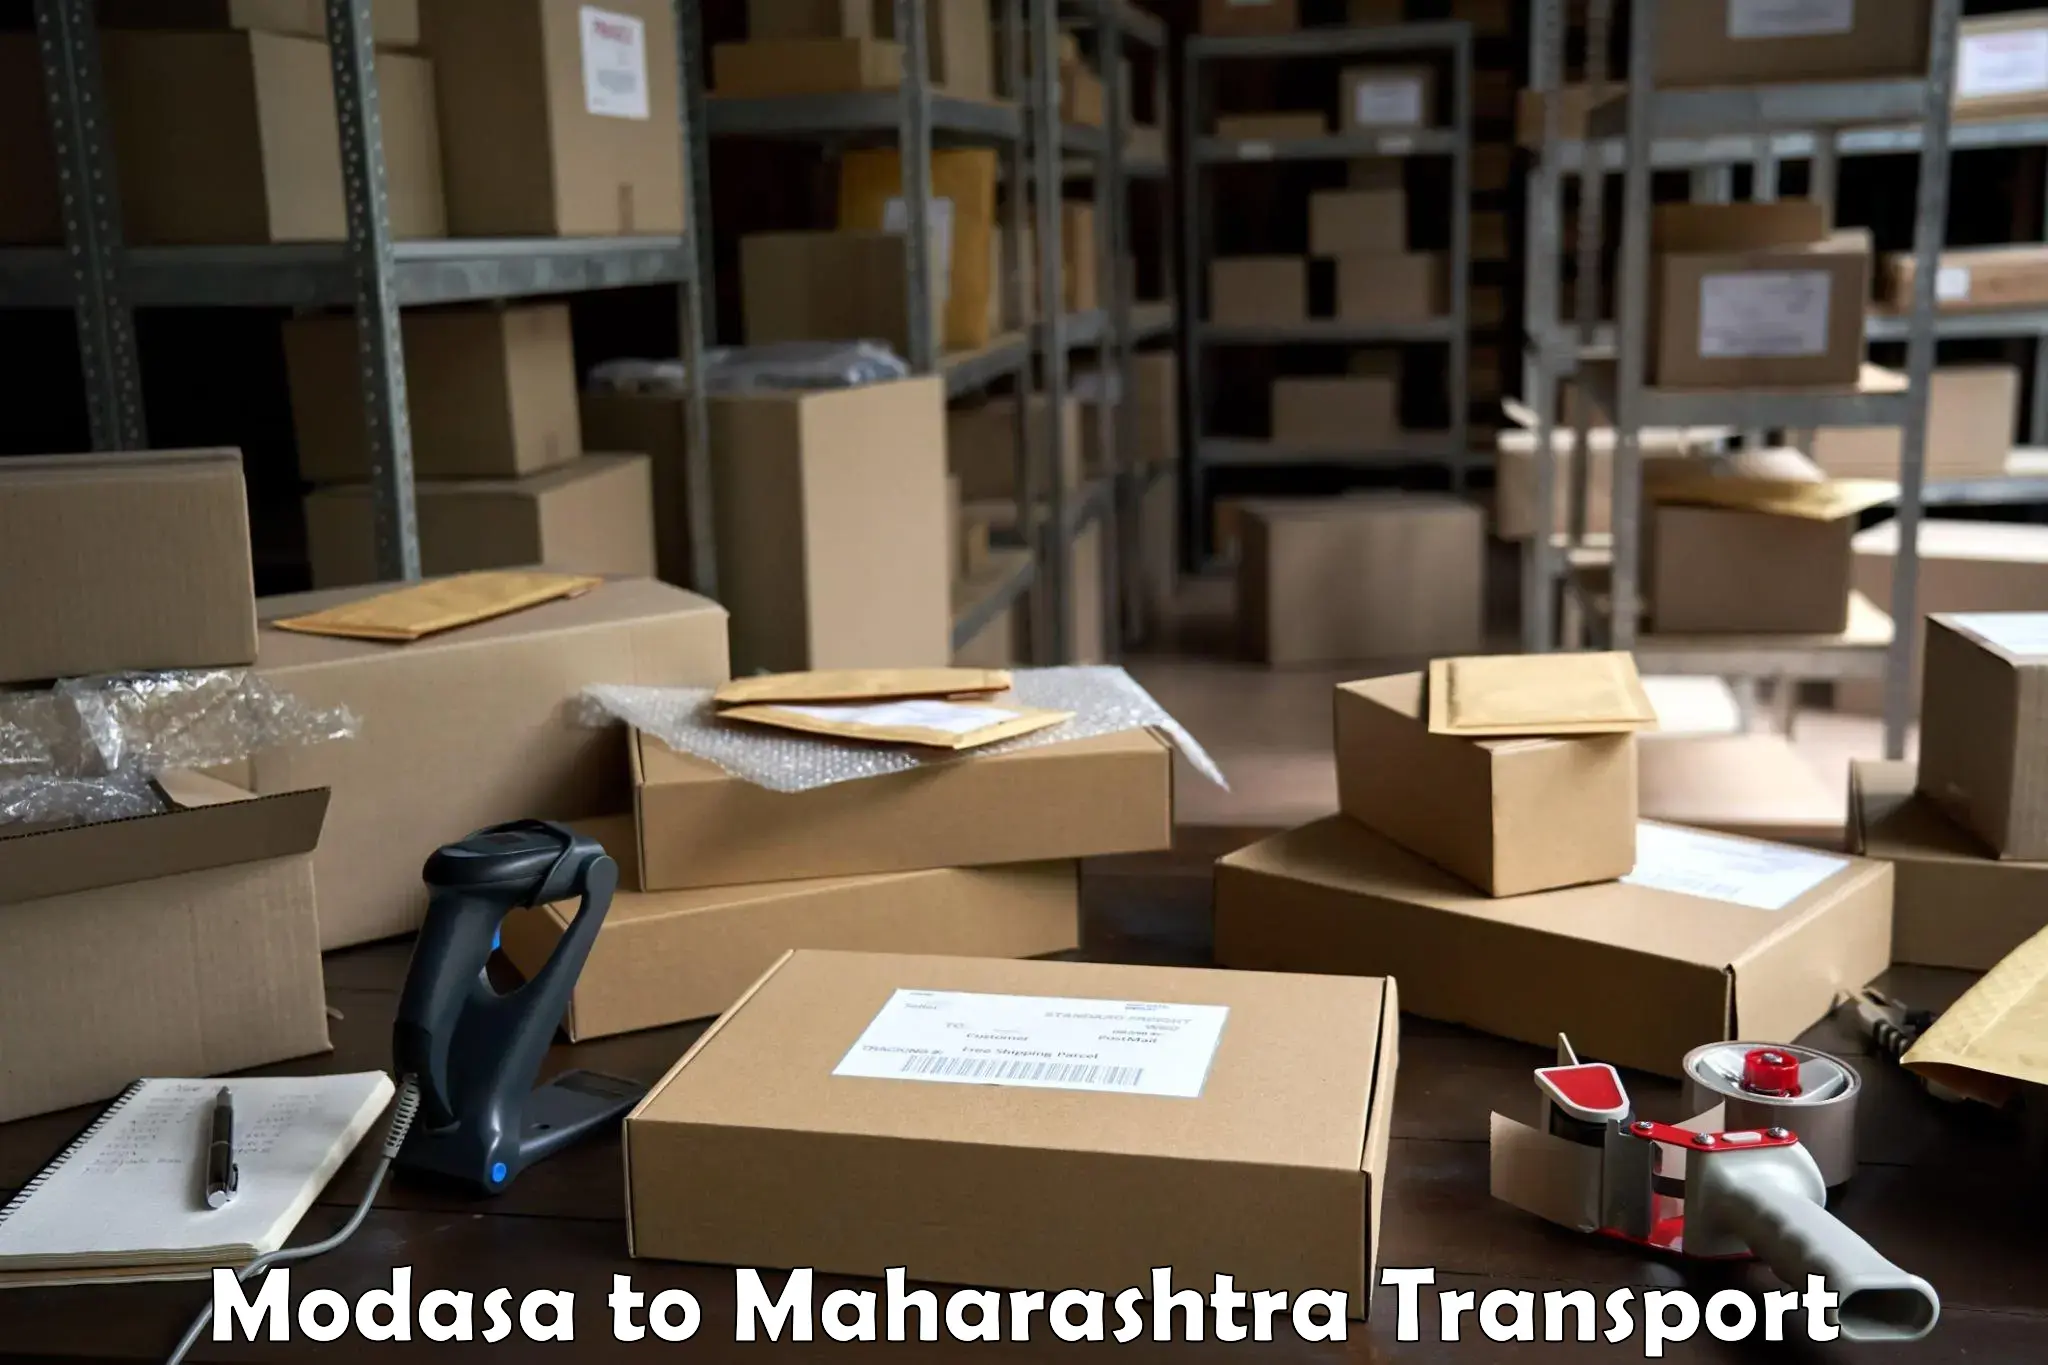 Lorry transport service Modasa to Maharashtra